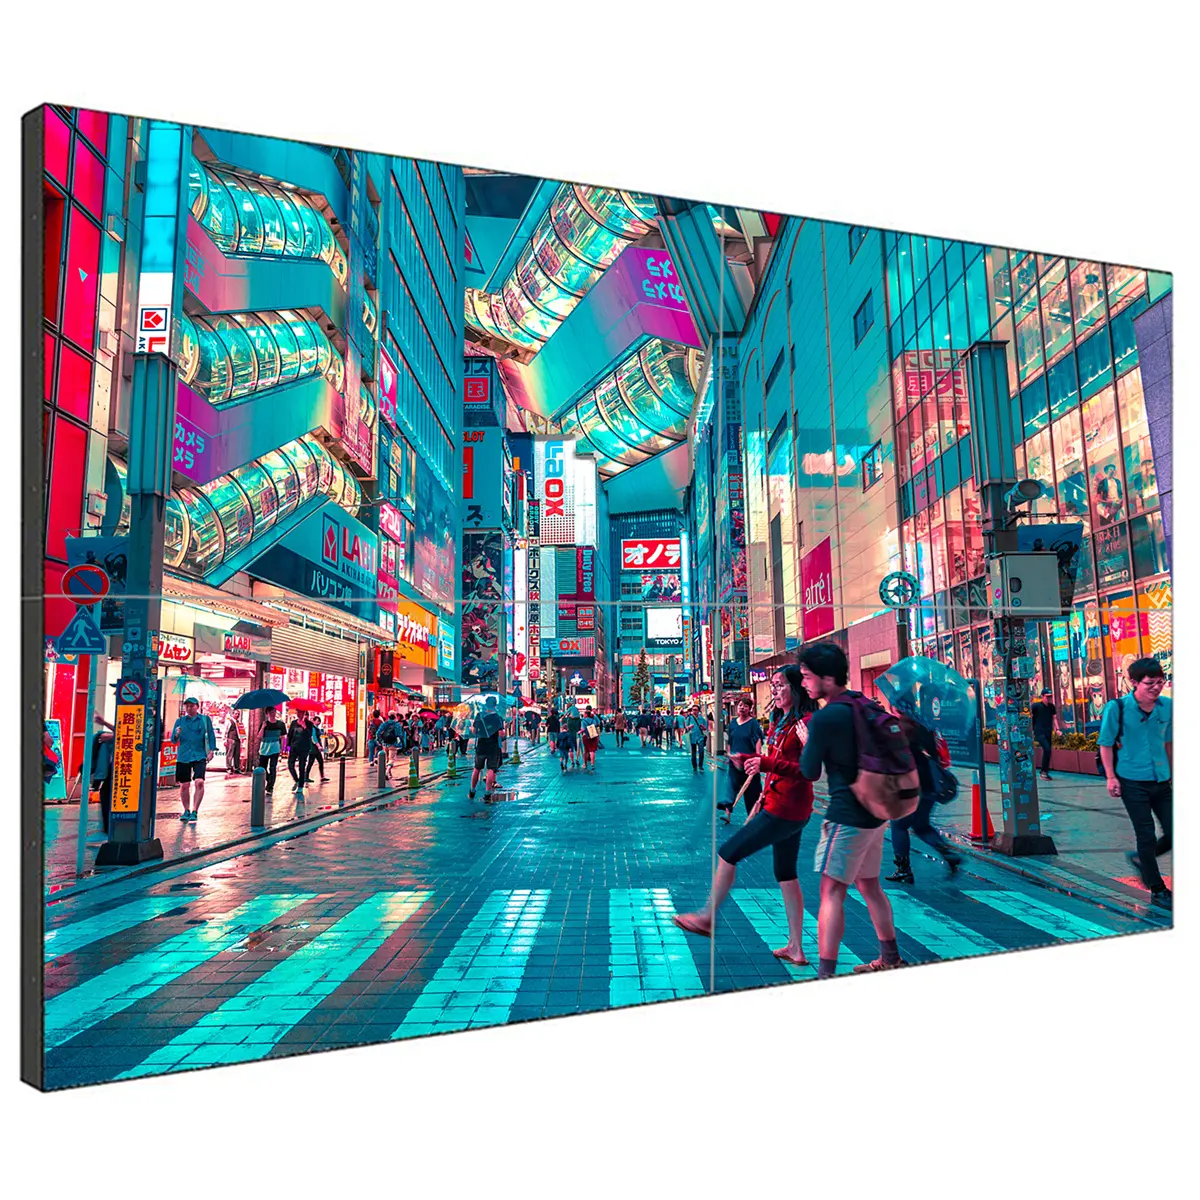 Reklam dijital tabela ve ekleme ekranı için video duvar paneli lcd ekran 2x2 denetleyici 55 inç 4k dağı videowall monitör